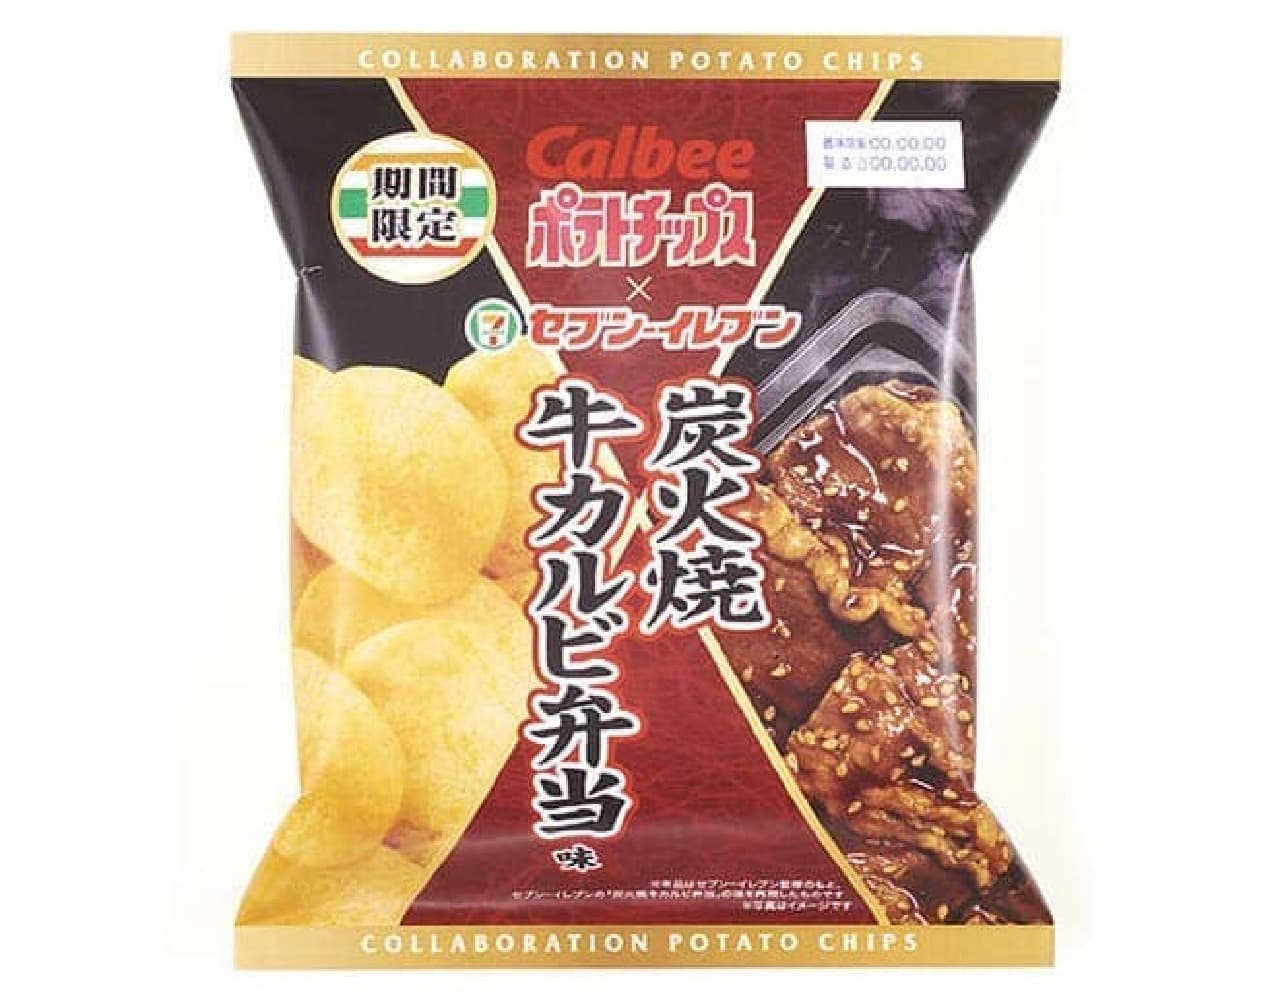 Calbee Potato Chips Charcoal Grilled Beef Calbee Bento Flavor 7-ELEVEN